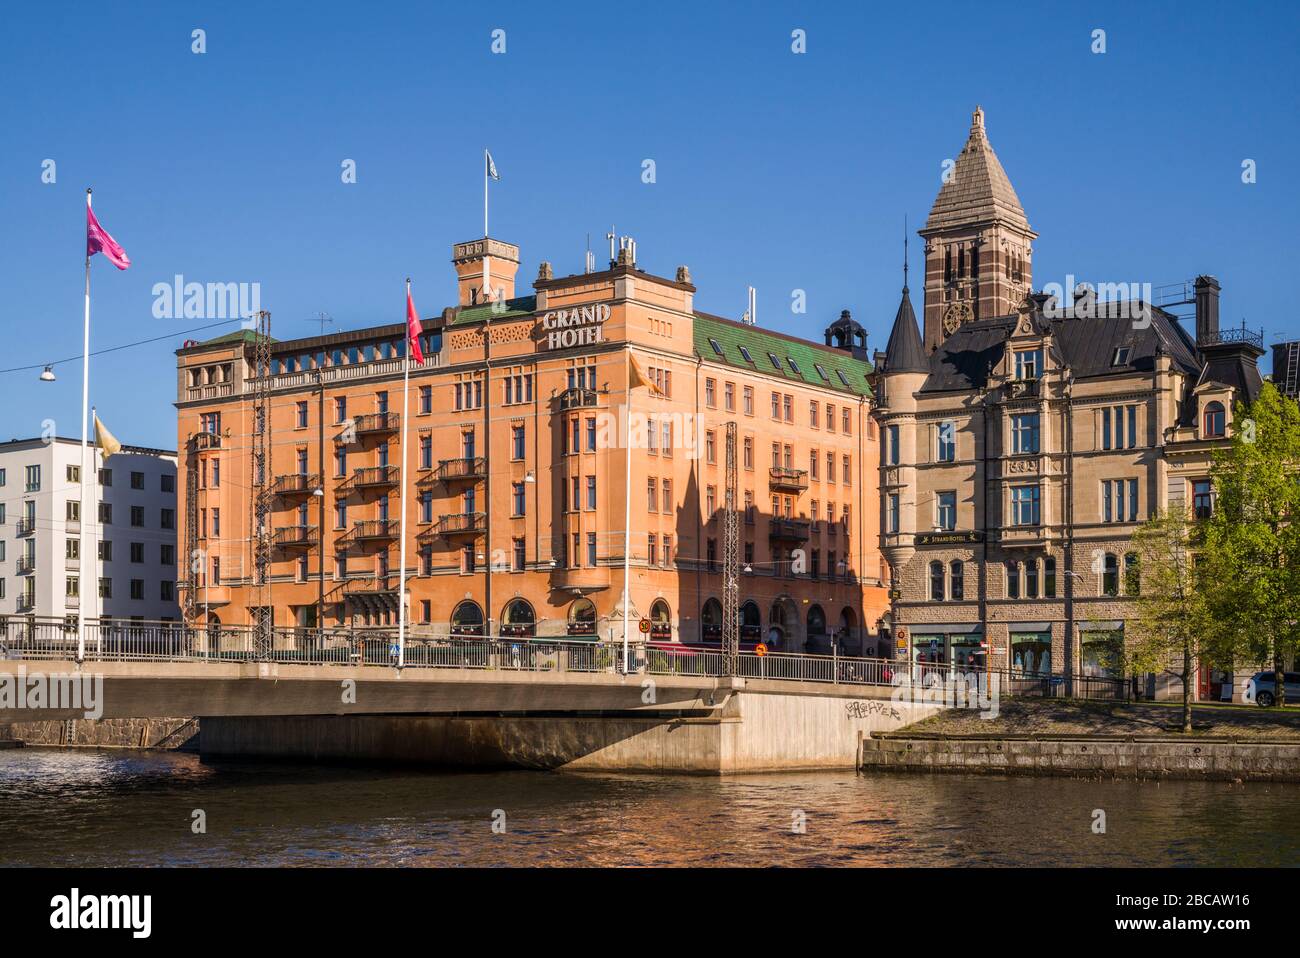 Suède, Sud-est de la Suède, Norrkoping, première ville industrielle suédoise, Grand Hotell Banque D'Images